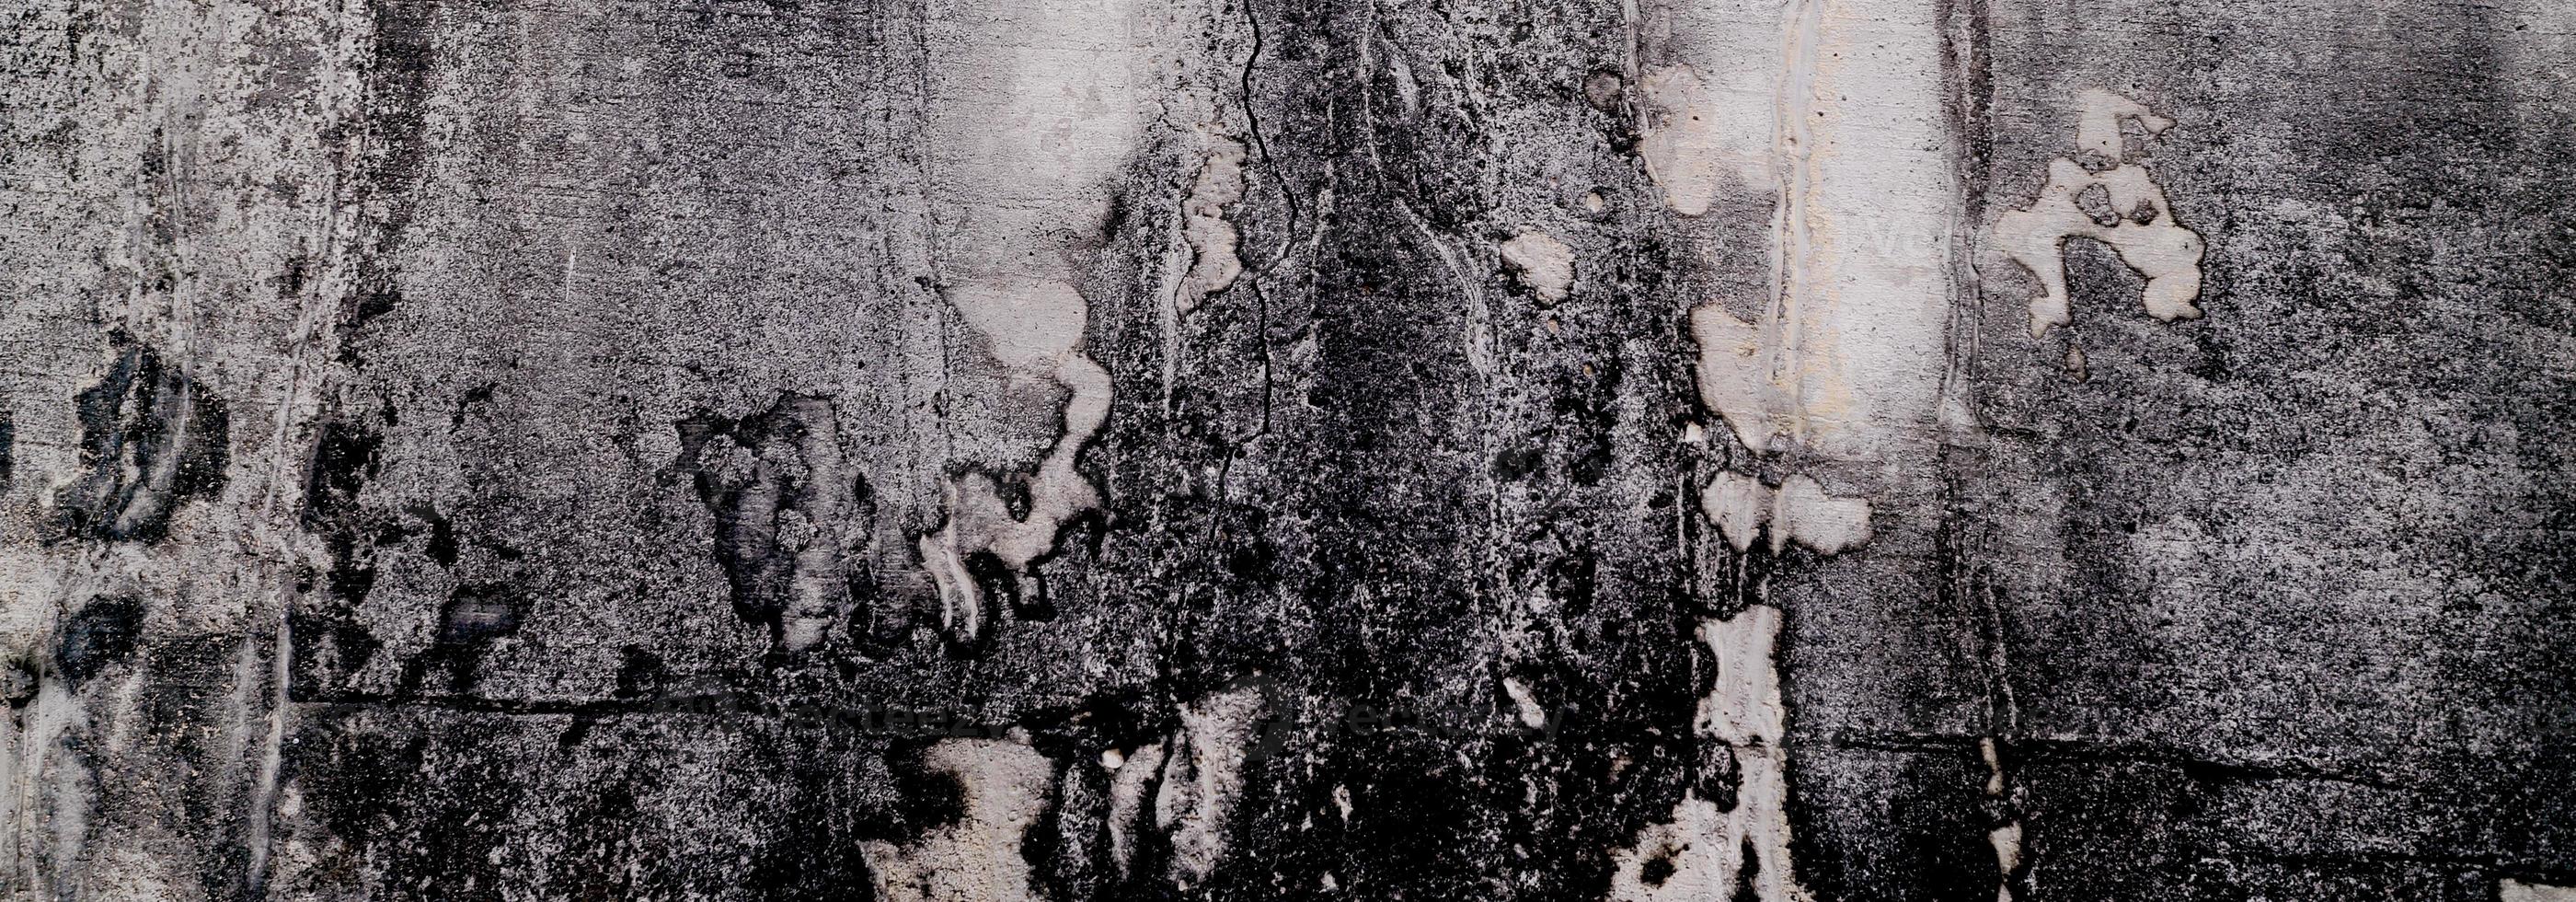 mur texturé avec du gris. texture de ciment en béton légèrement gris clair pour le fond. texture de peinture abstraite. photo